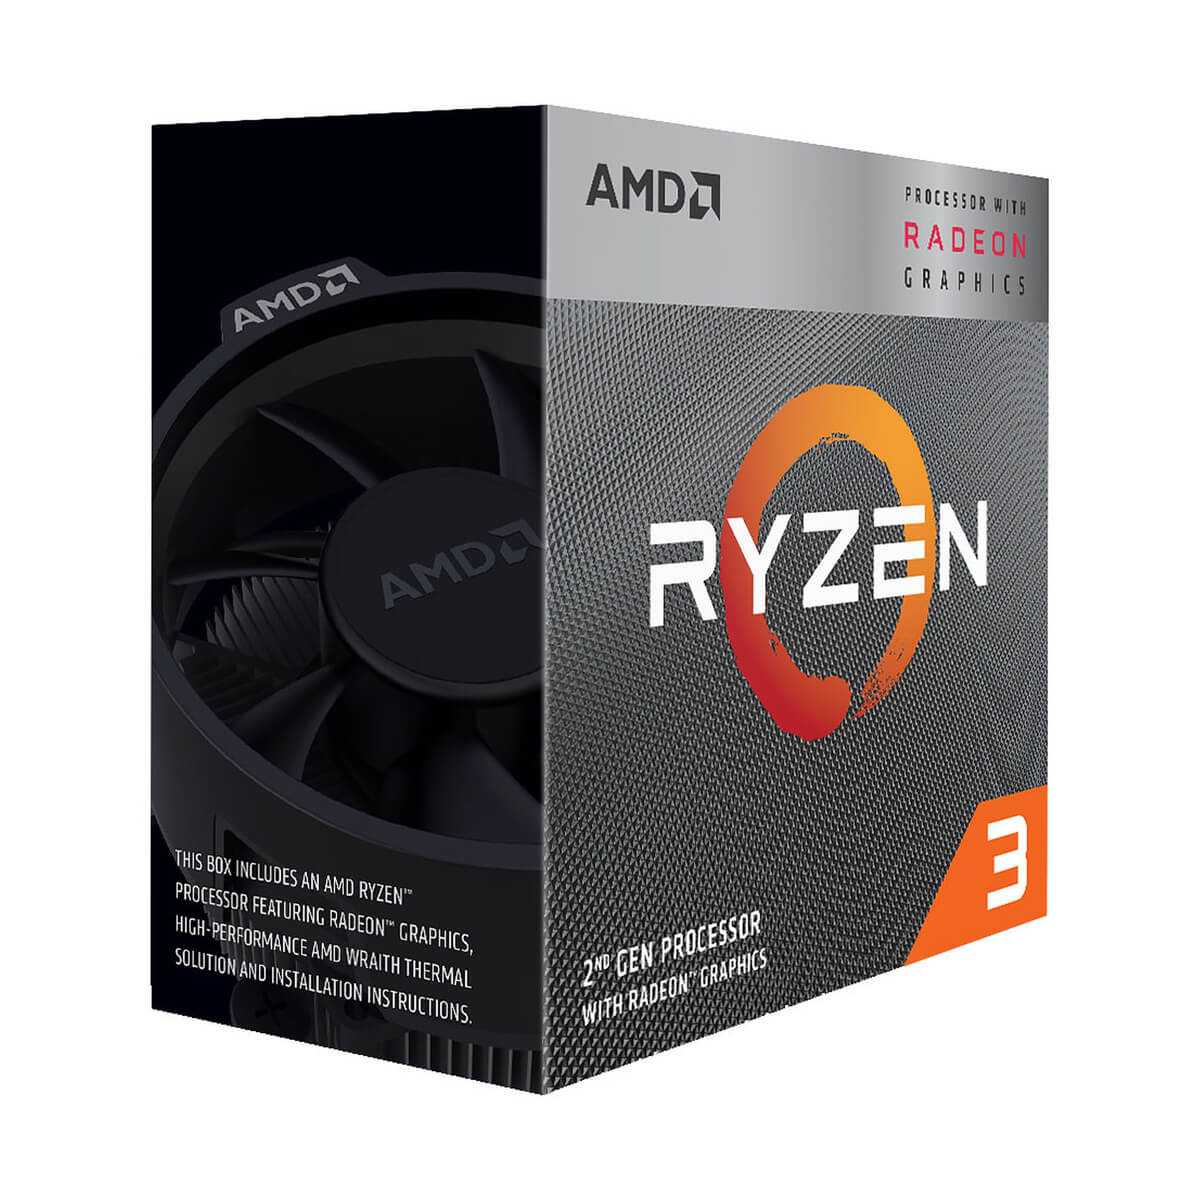 AMD Ryzen 3 GHz, gráficos Radeon Vega